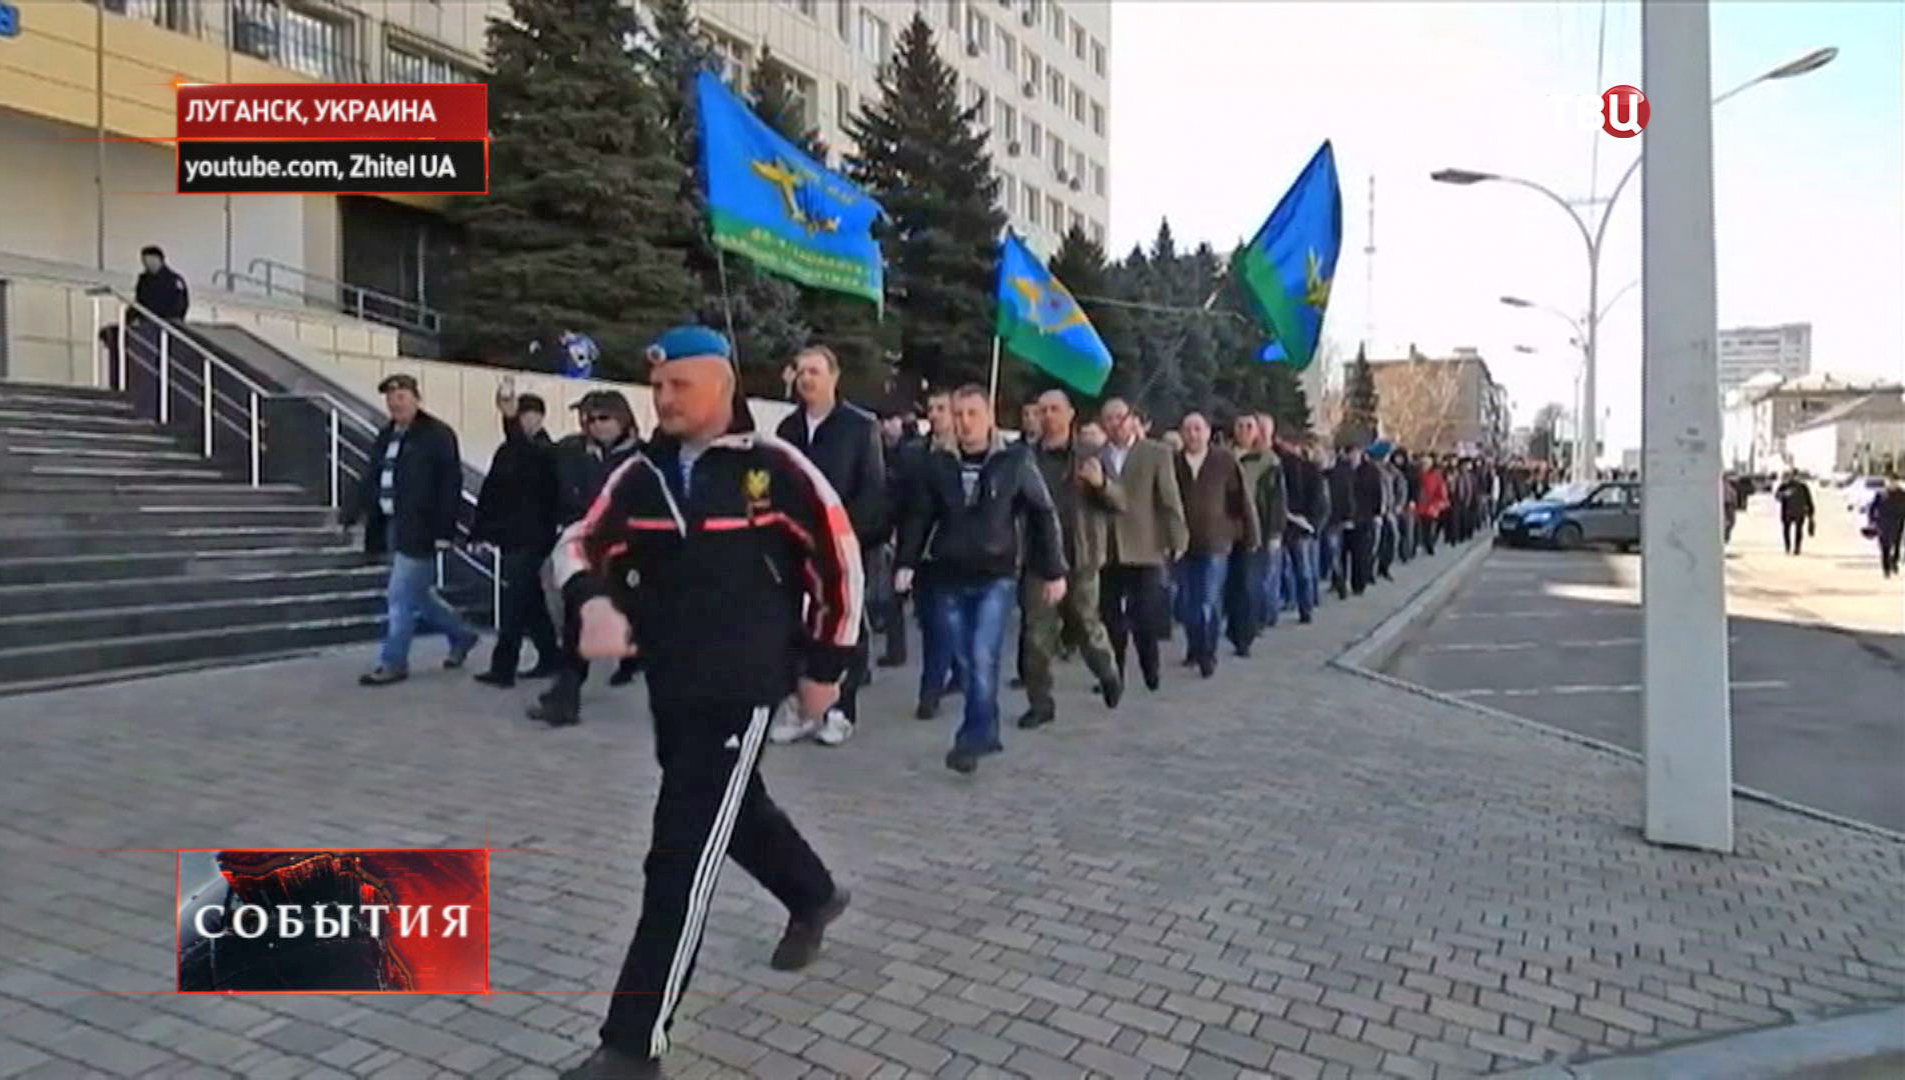 Ютуб украина новости сегодня на русском языке. Бардак Луганск.